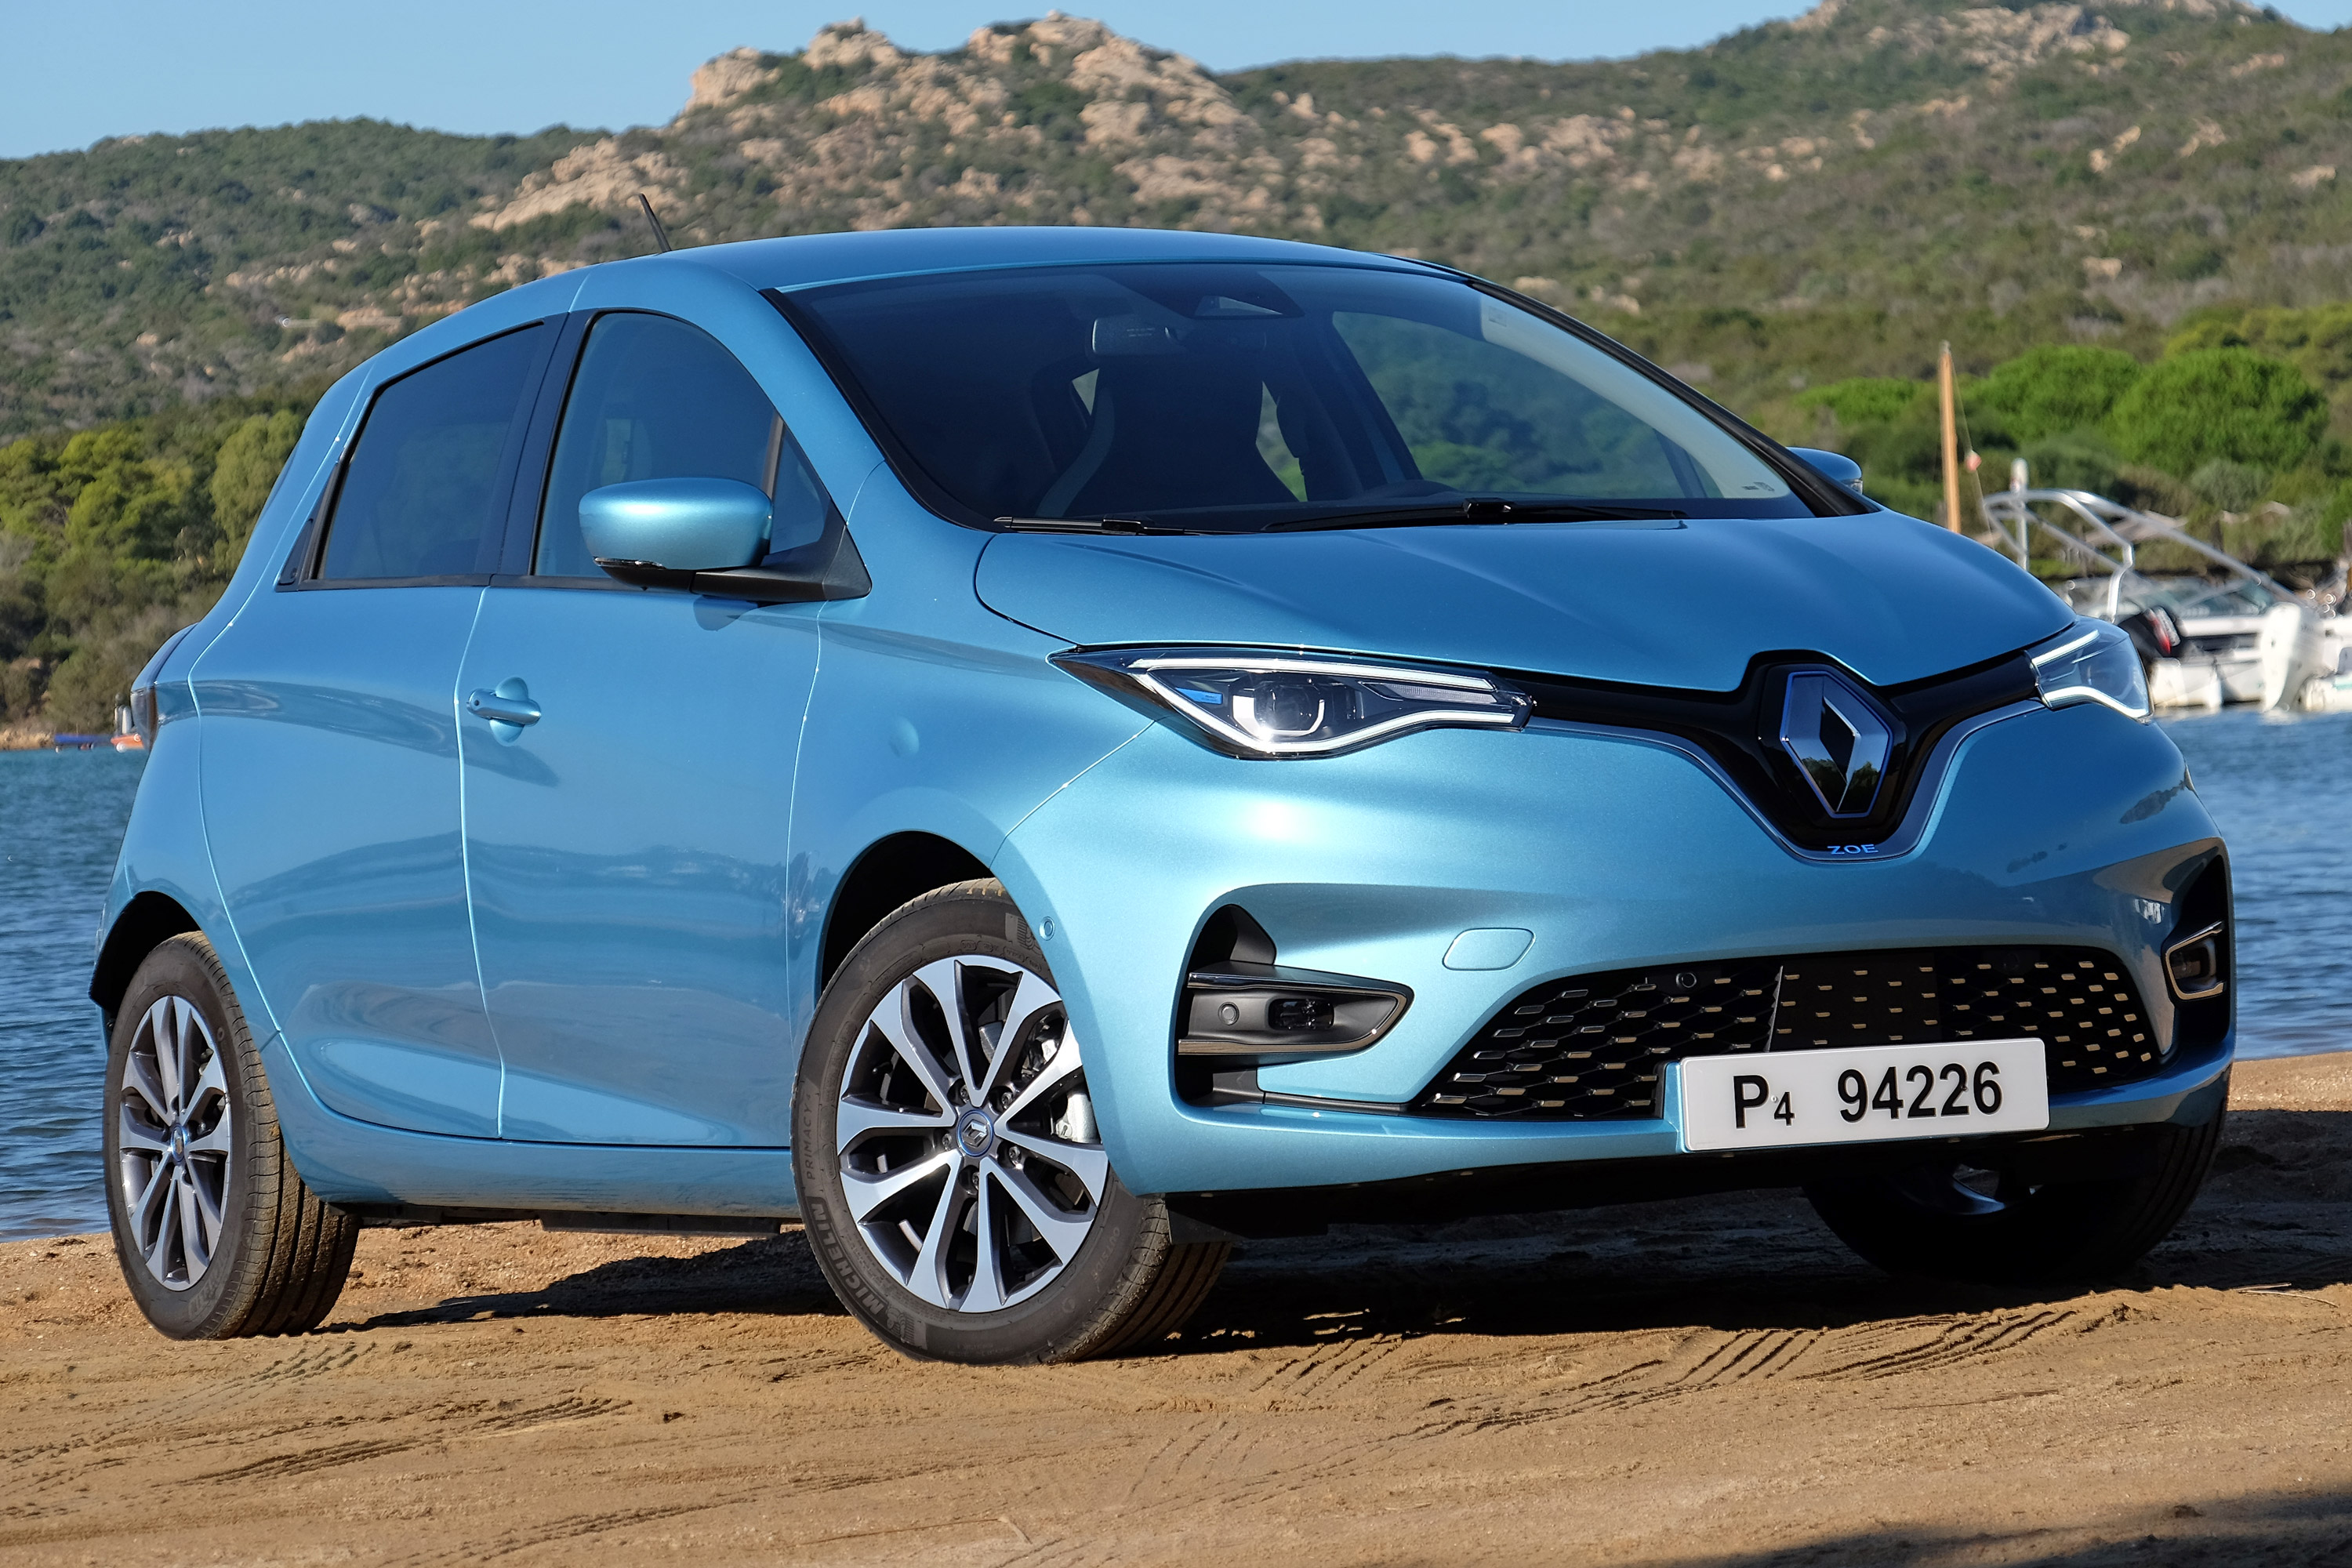 Szebb, erősebb és messzebb is megy Európa kedvenc villanyautója – Renault Zoé teszt 2019 15